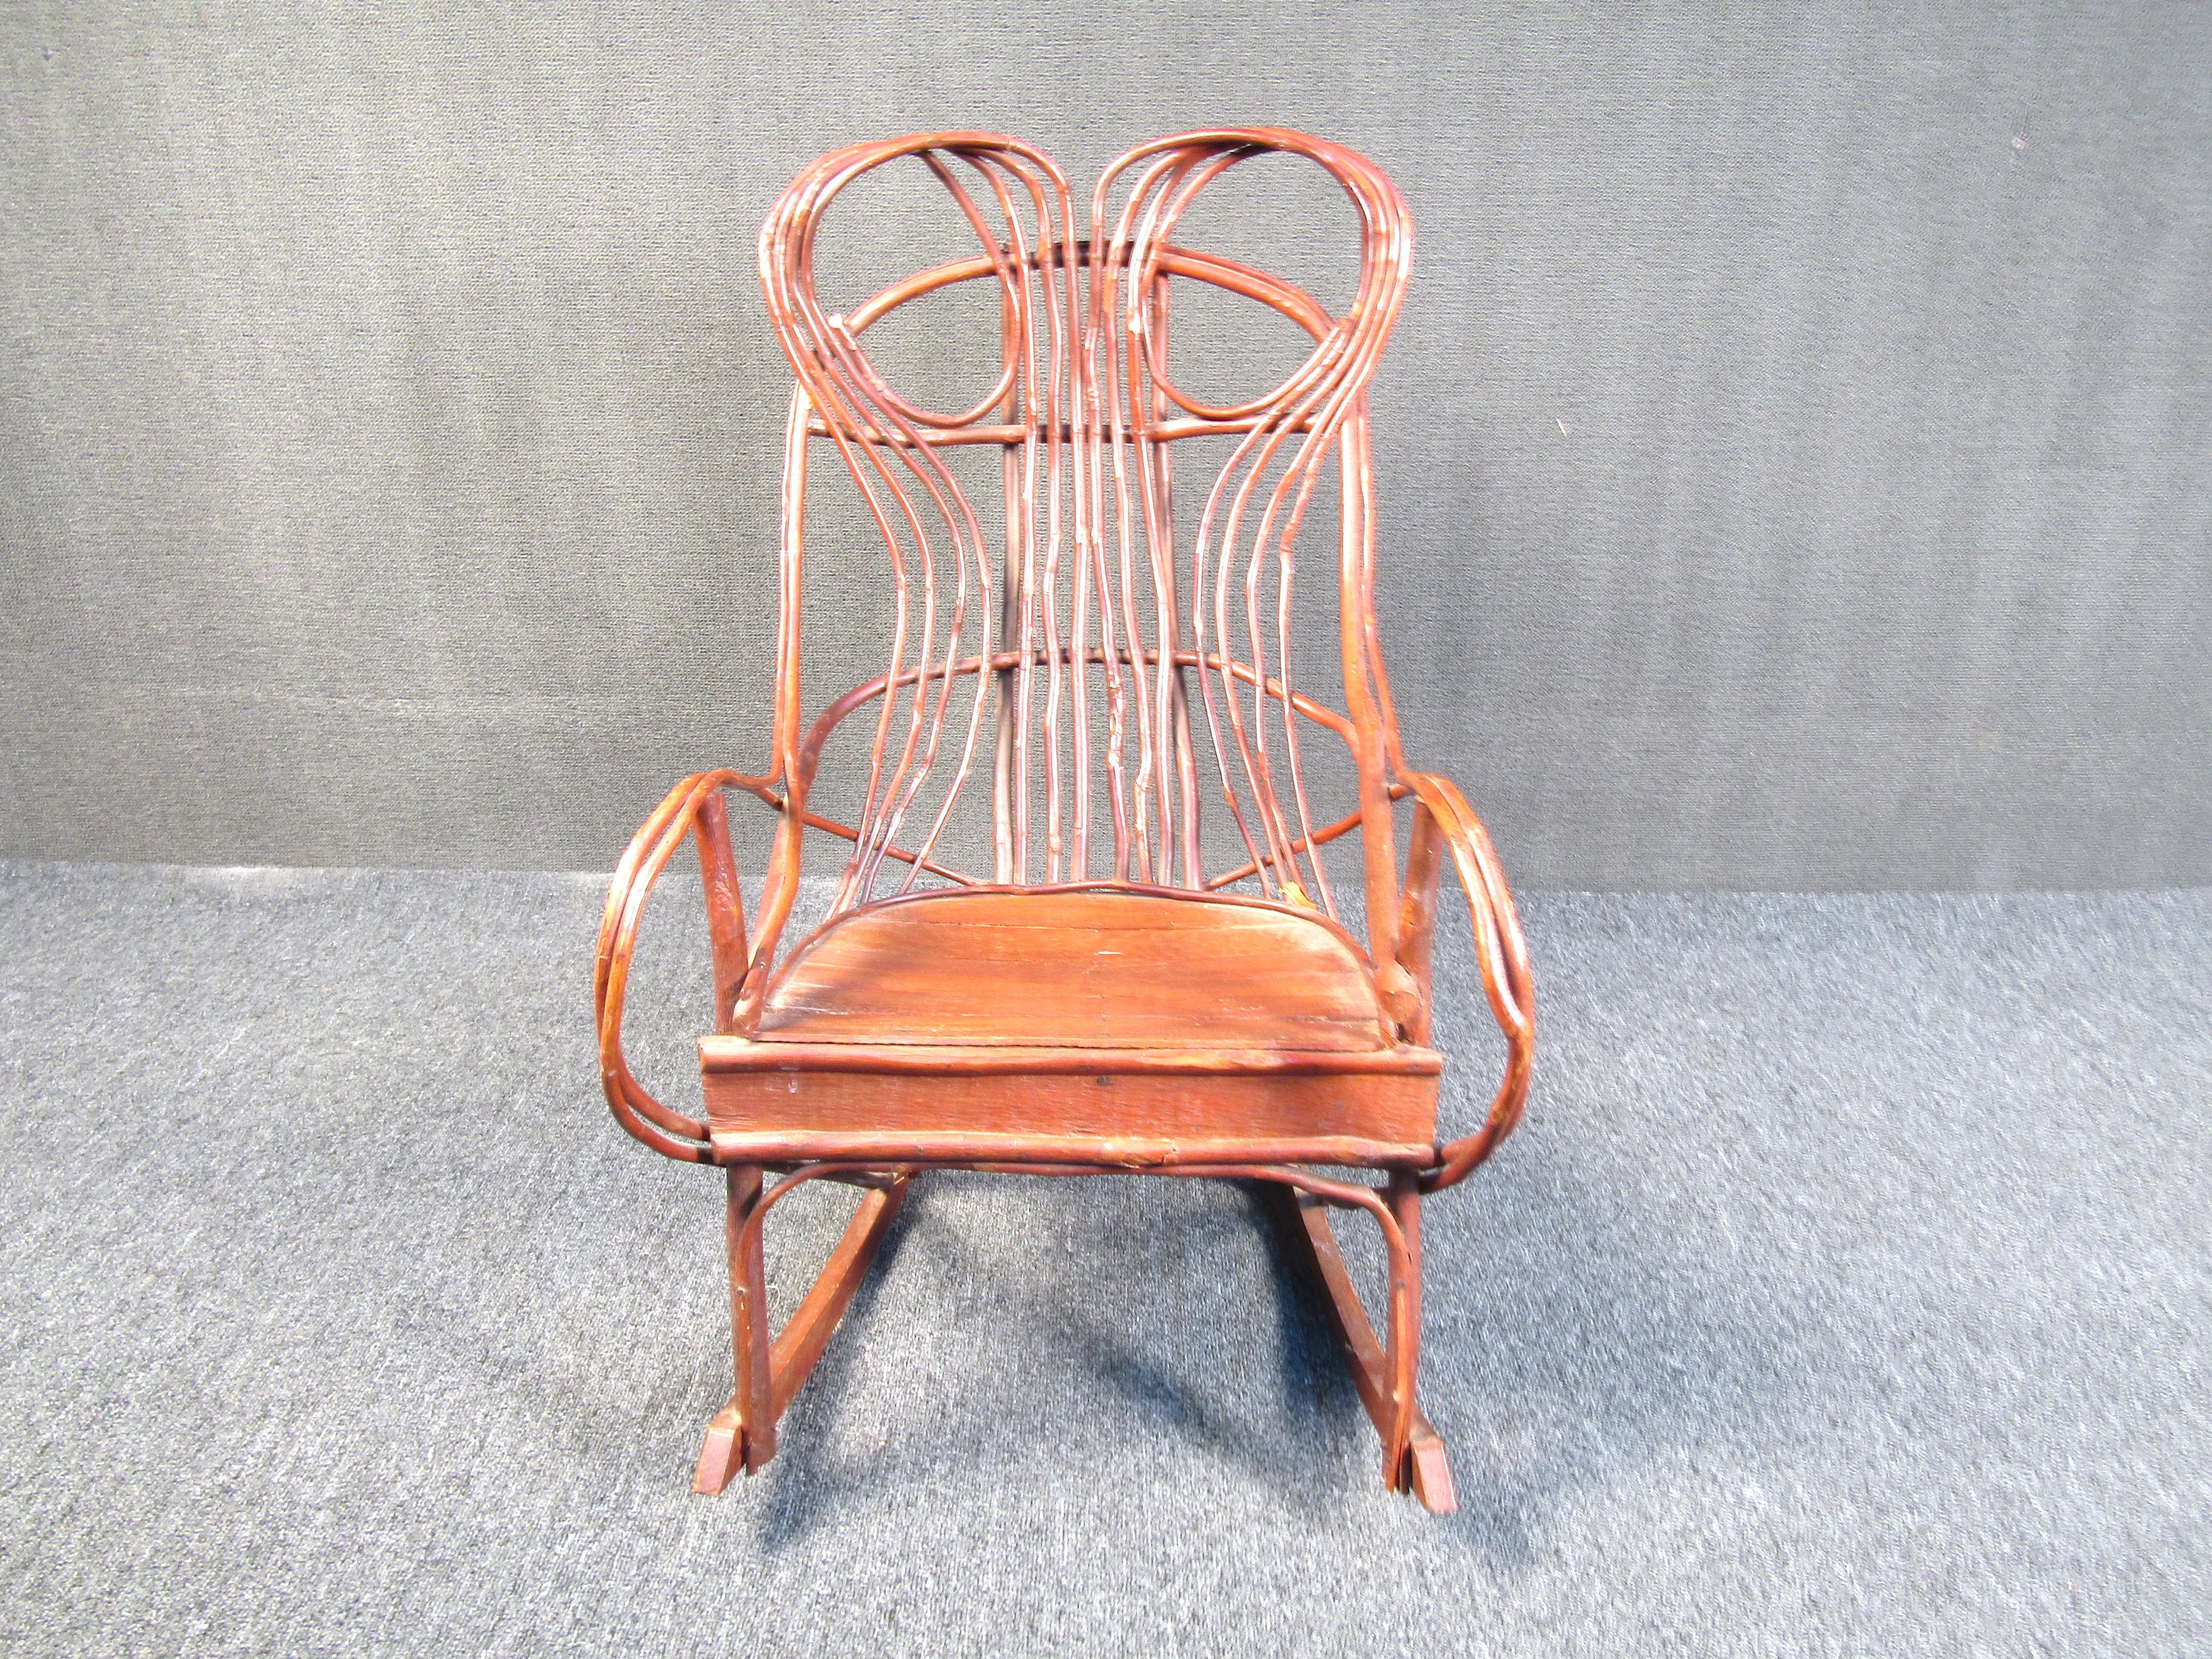 Dieser unglaublich einzigartige Schaukelstuhl ist aus kunstvoll geflochtenen und befestigten Ästen gefertigt. Er hat eine flache Holzsitzfläche, während der Rest des Möbelstücks aus unbearbeiteten Ästen besteht. Dieses Stück wird jedem Raum